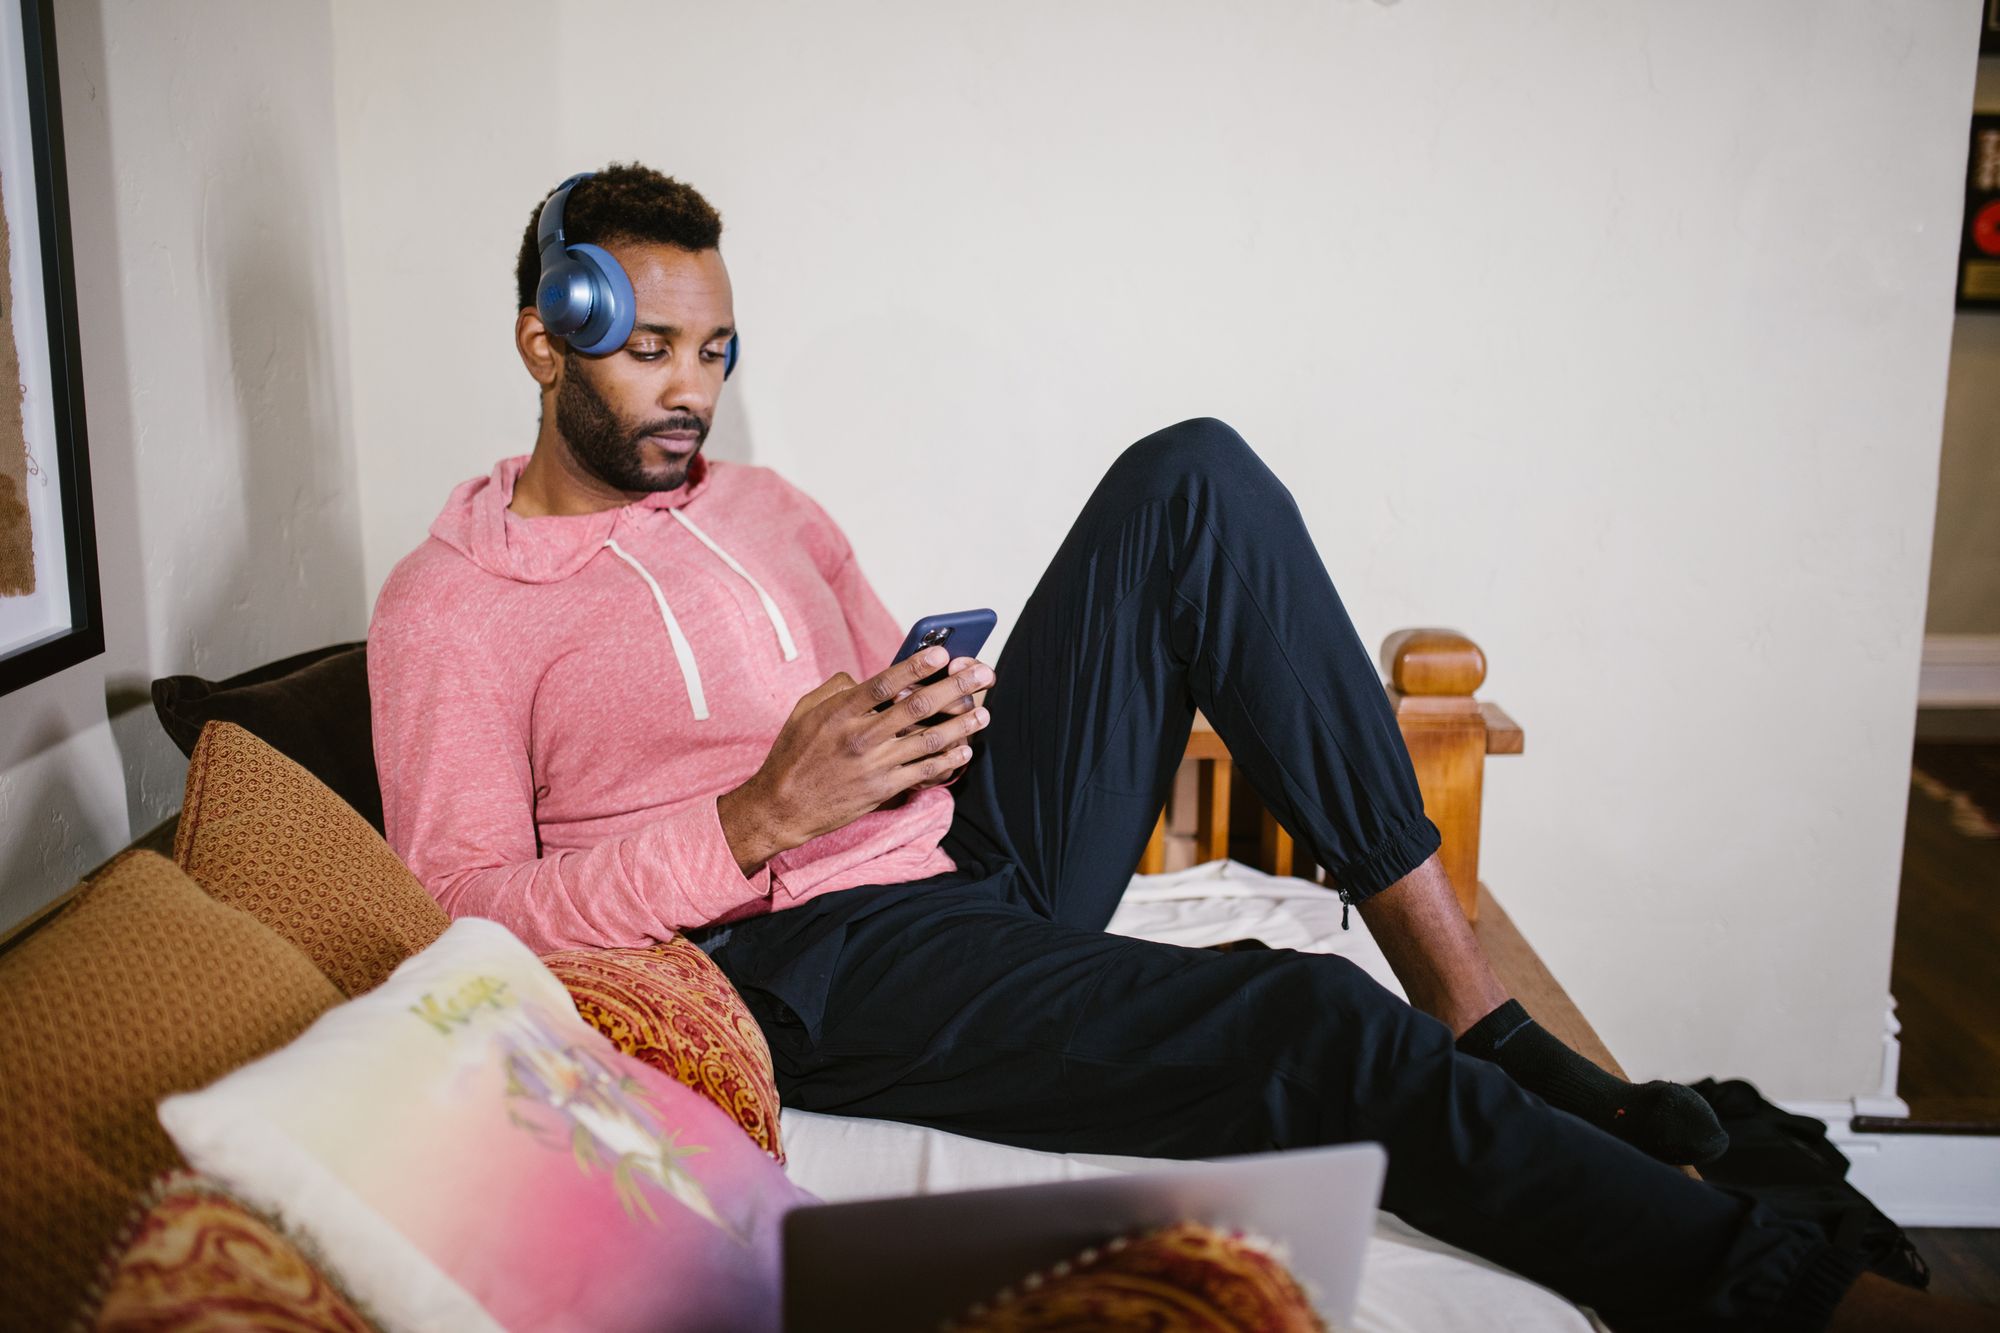 Foto de um homem negro de cabelos curtos segurando um celular com as duas mãos. Ele está sentado em um sofá e usa um fone de ouvidos um pouco acima de uma das orelhas. Usa casaco de moletom rosa e calça preta.